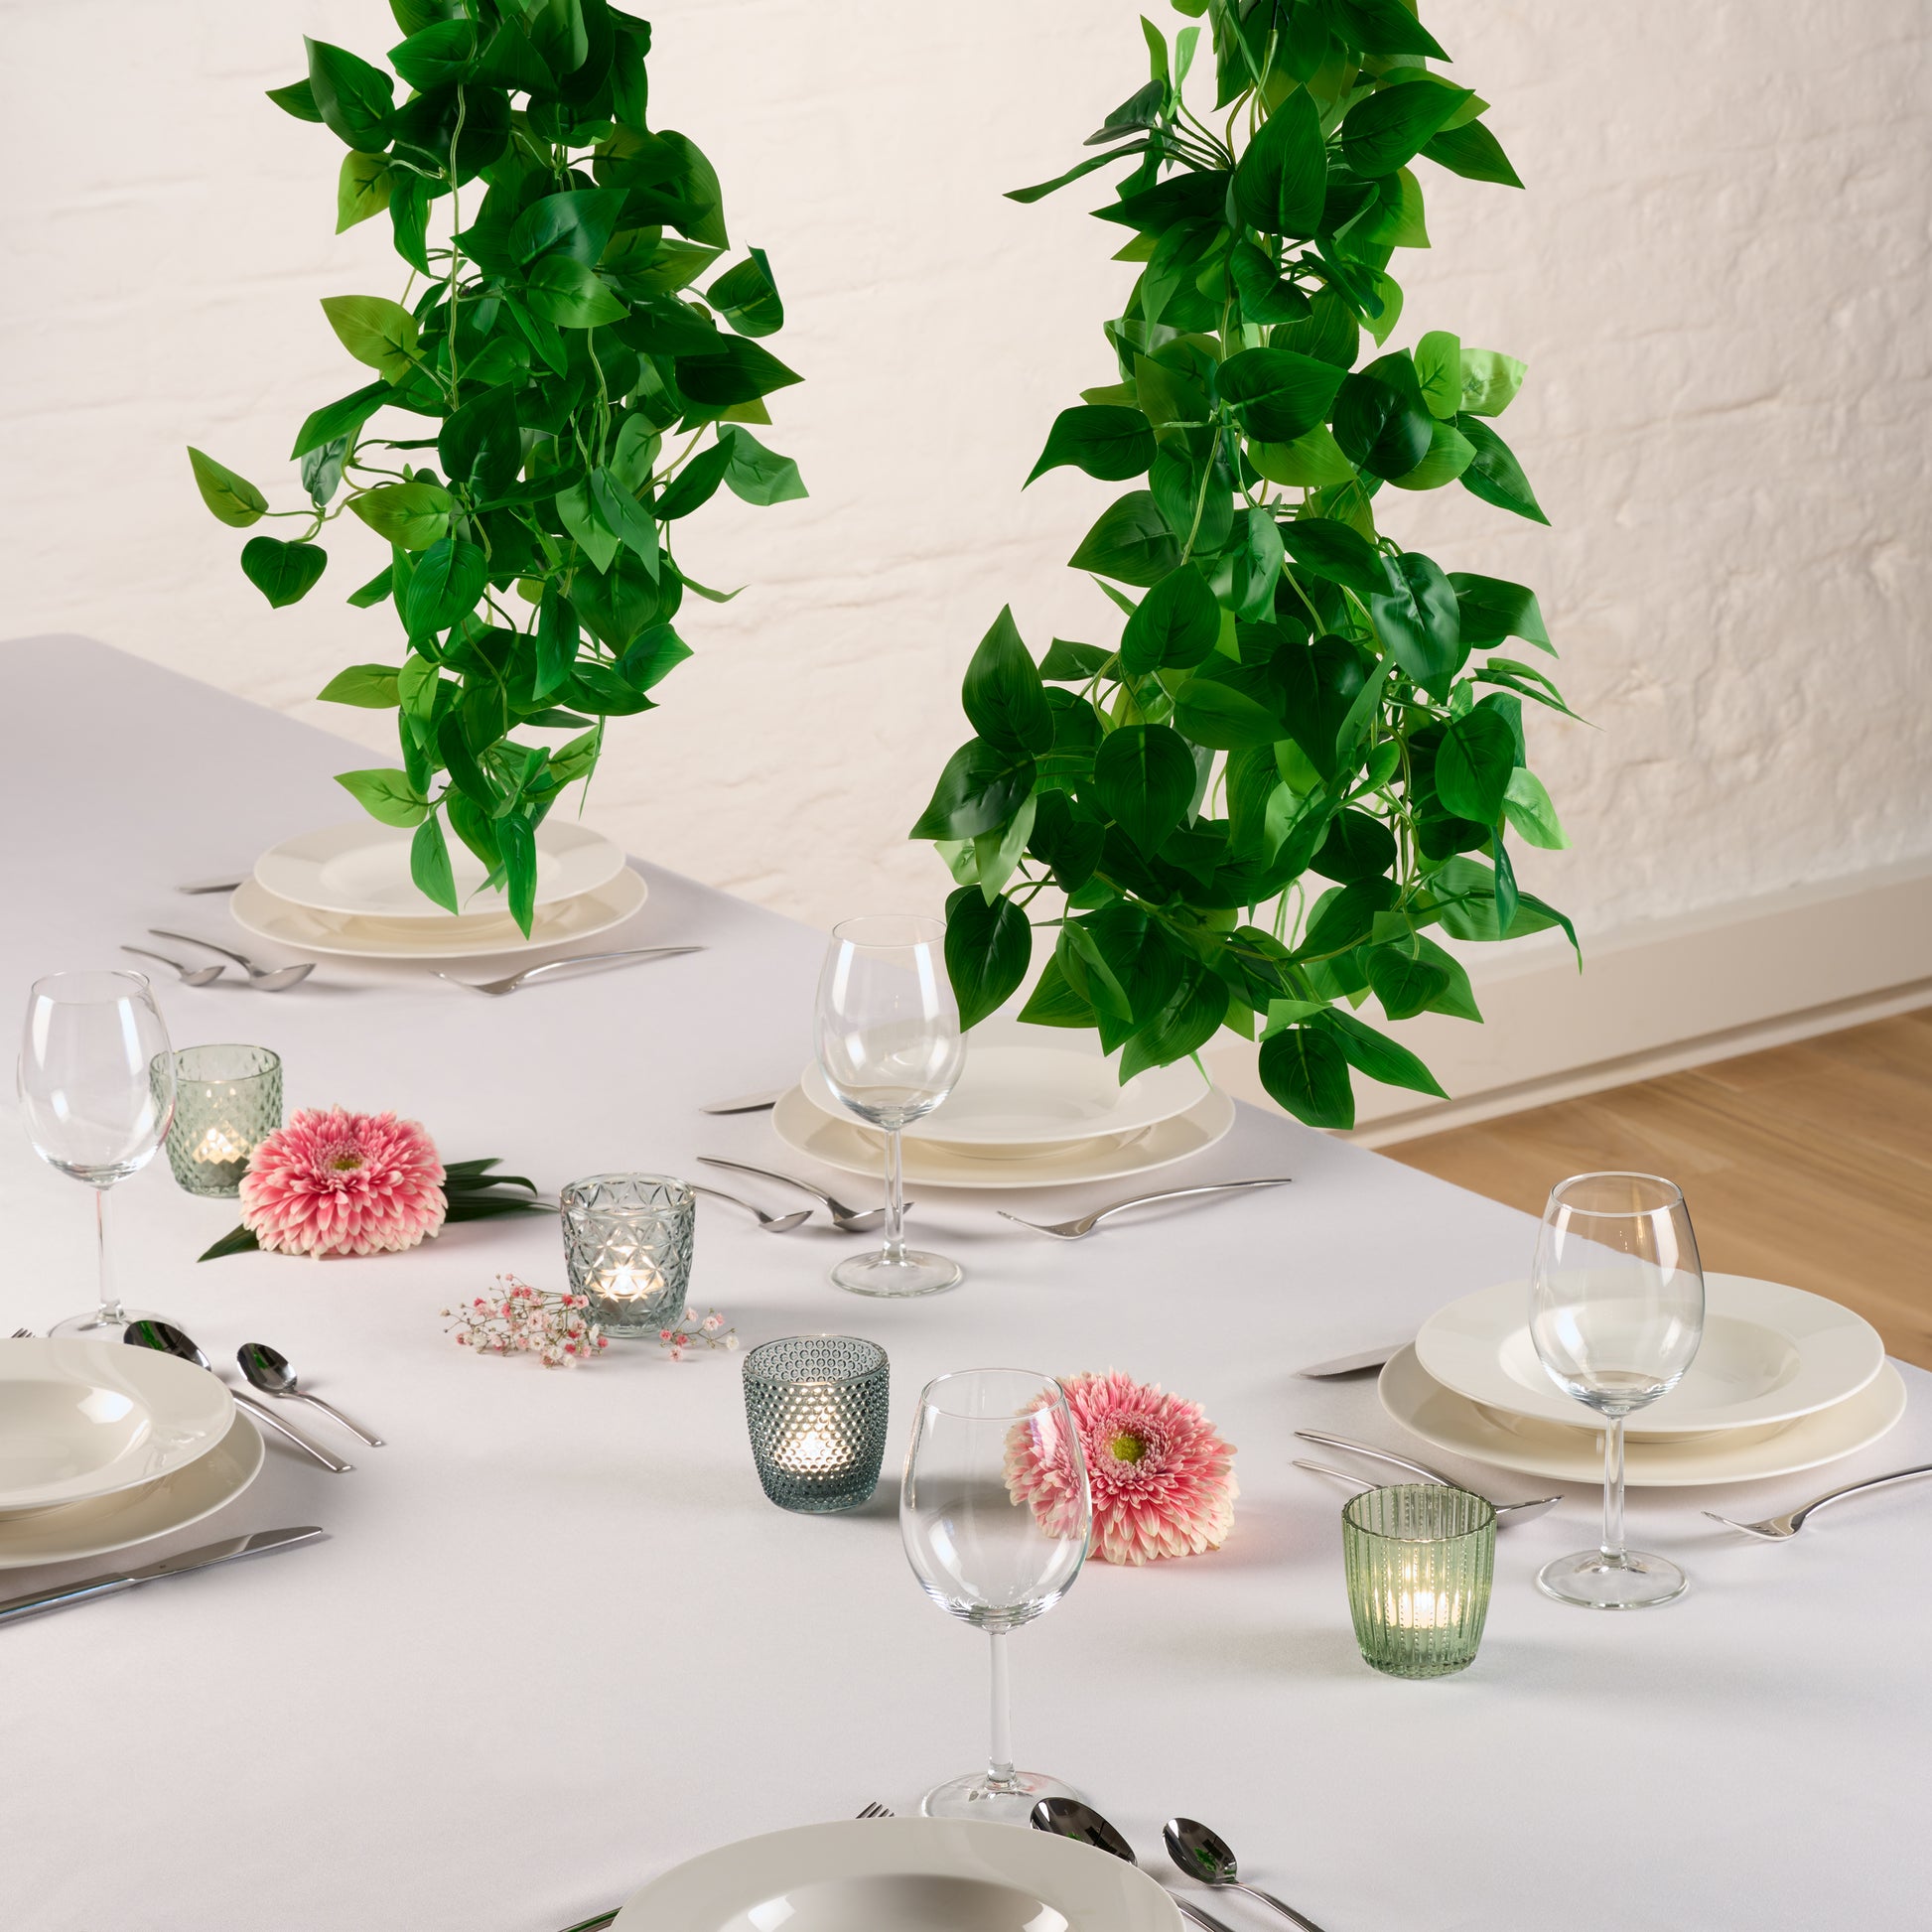 Hängende Efeu-Pflanze über einem gedeckten weißem Tisch.